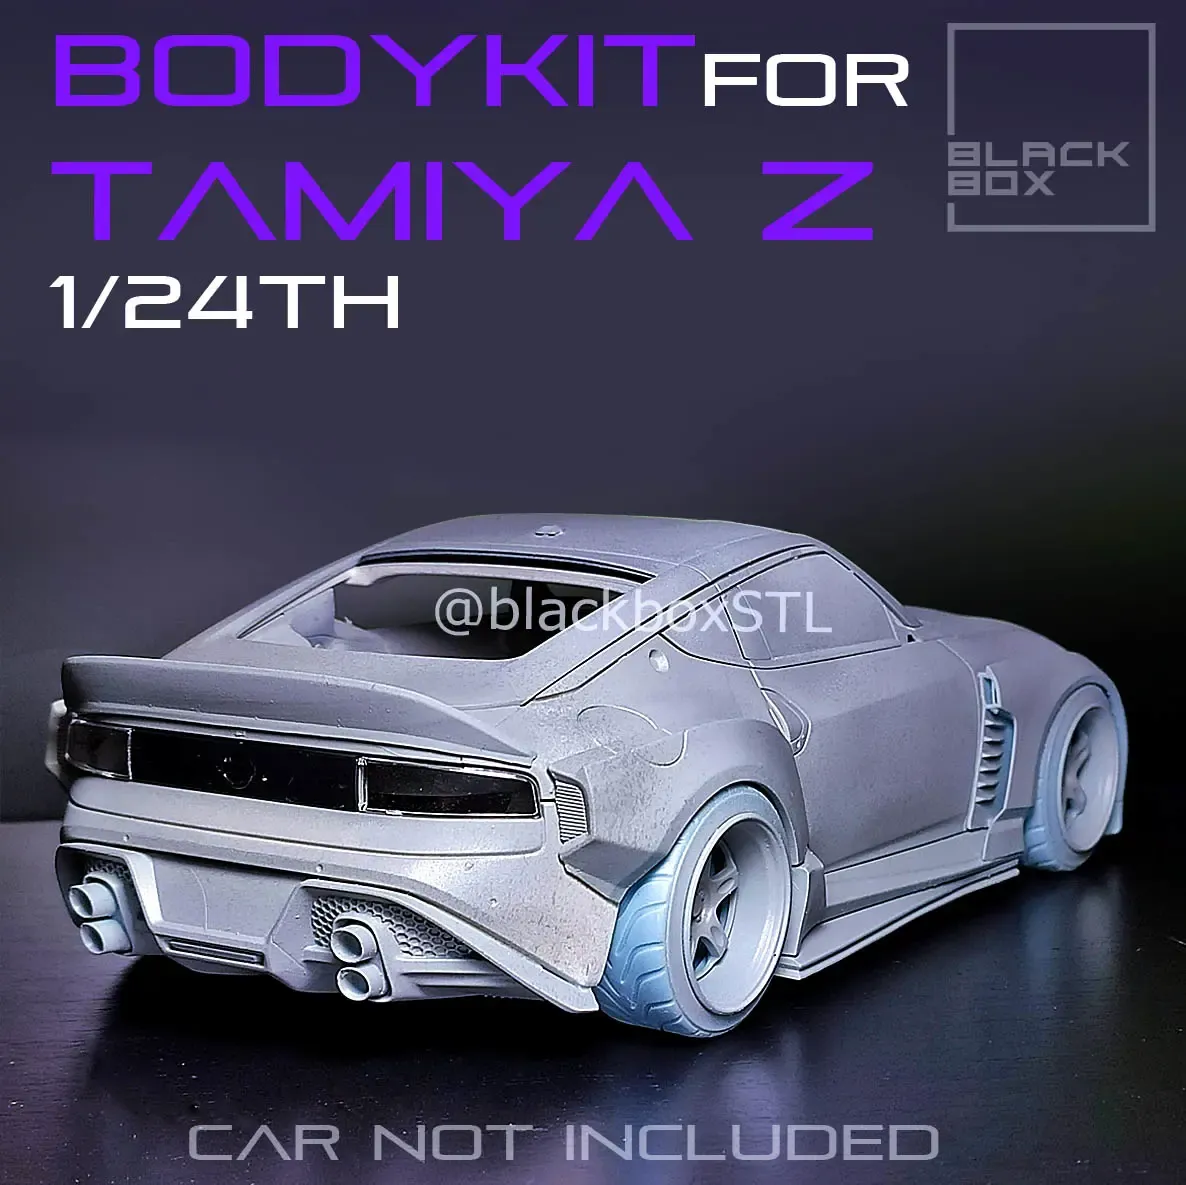 Bodykit for TAMIYA Z 2023  1-24th Modelkit